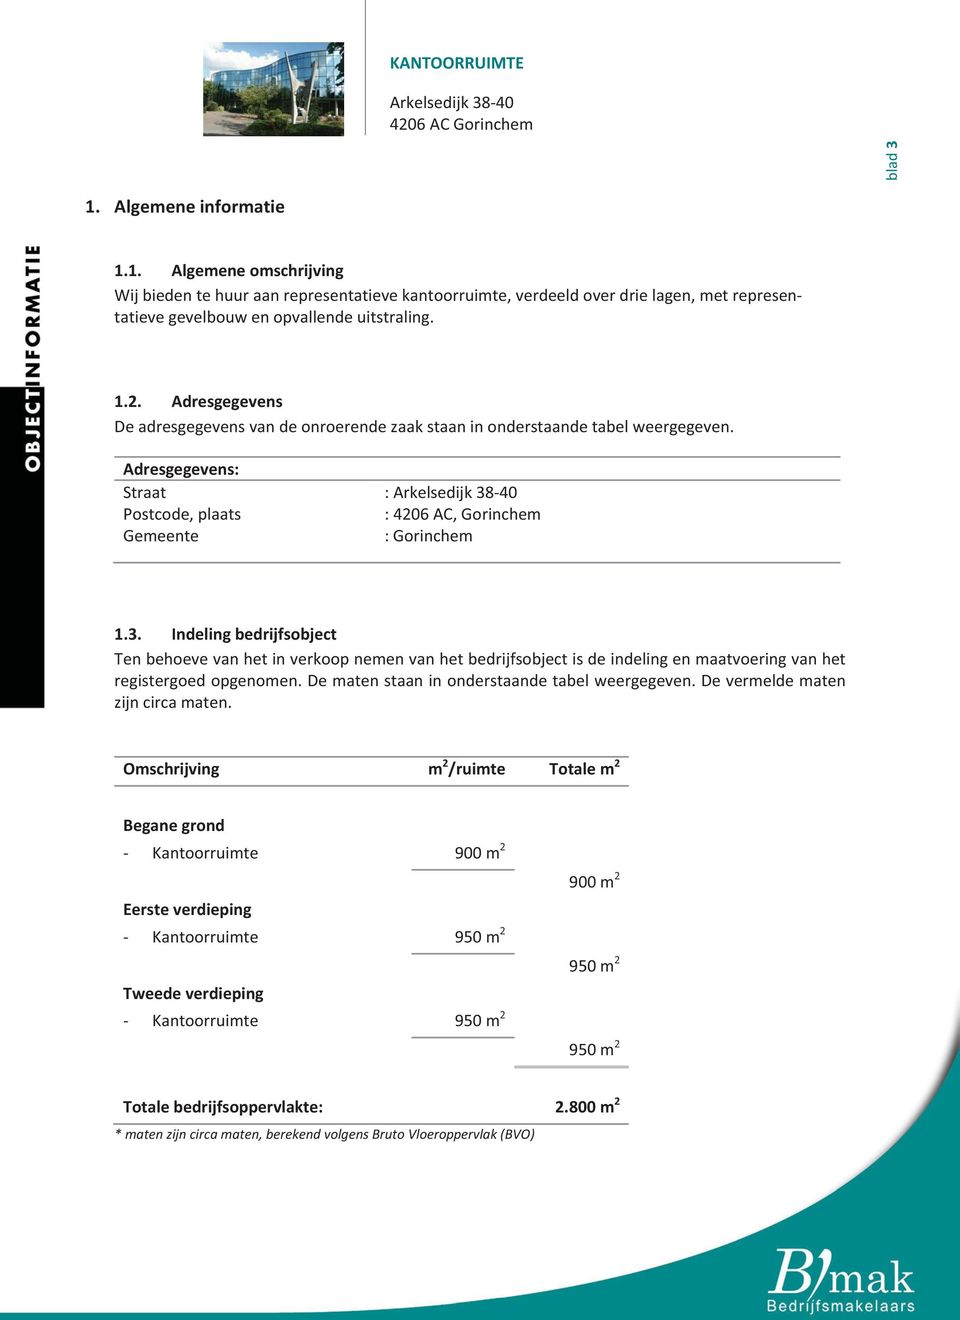 40 :4206AC,Gorinchem :Gorinchem 1.3. Indelingbedrijfsobject Tenbehoevevanhetinverkoopnemenvanhetbedrijfsobjectisdeindelingenmaatvoeringvanhet registergoedopgenomen.